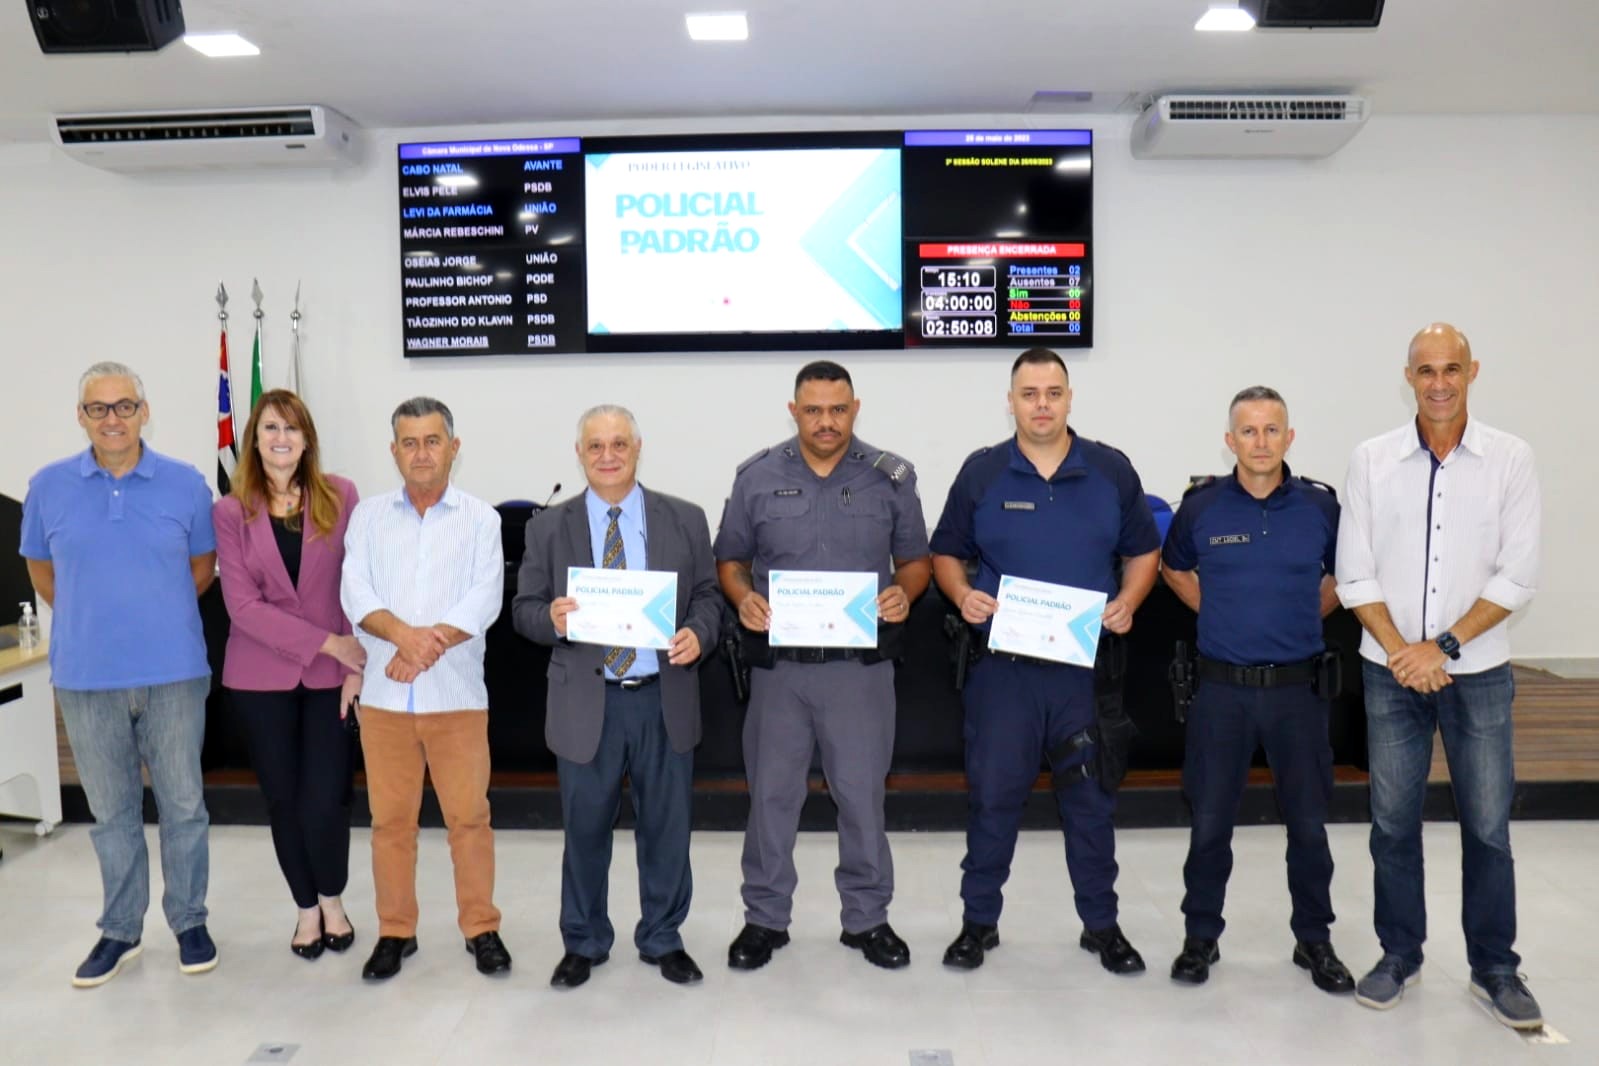 Câmara Municipal de Nova Odessa entrega títulos de “Policial Padrão”